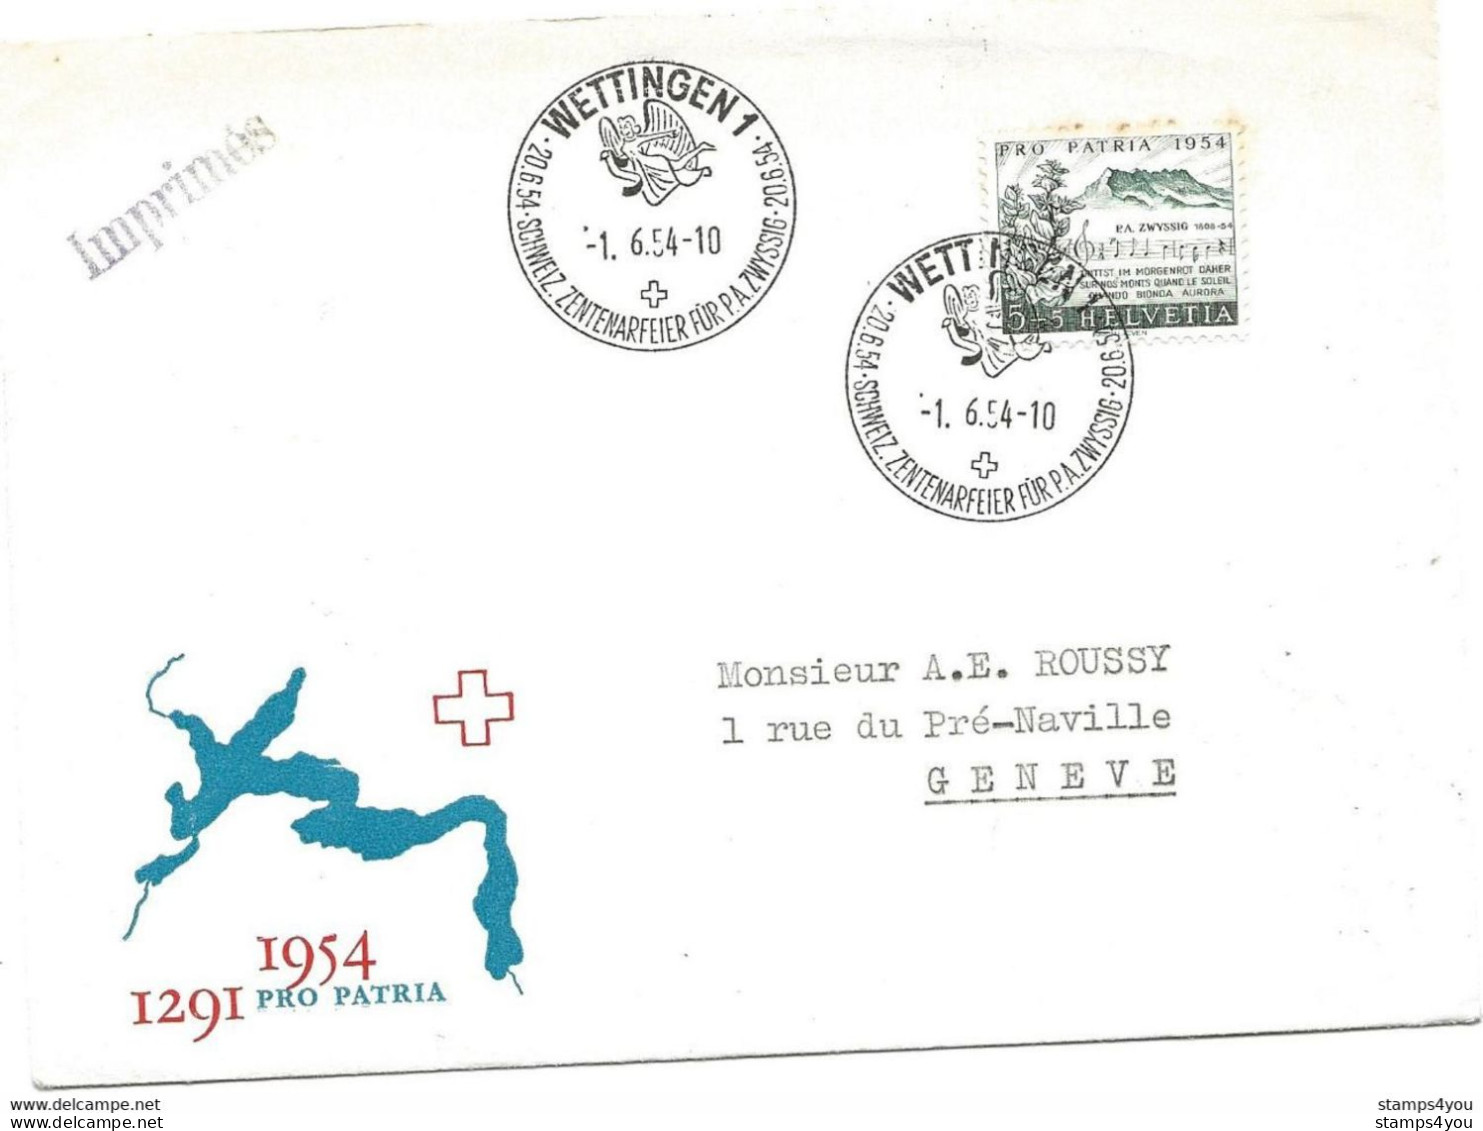 125 - 7 - Enveloppe Avec Oblit Spéciale "Wettingen Schweiz. Zenterarfeier Für PA Zwyssig 1954" - Postmark Collection